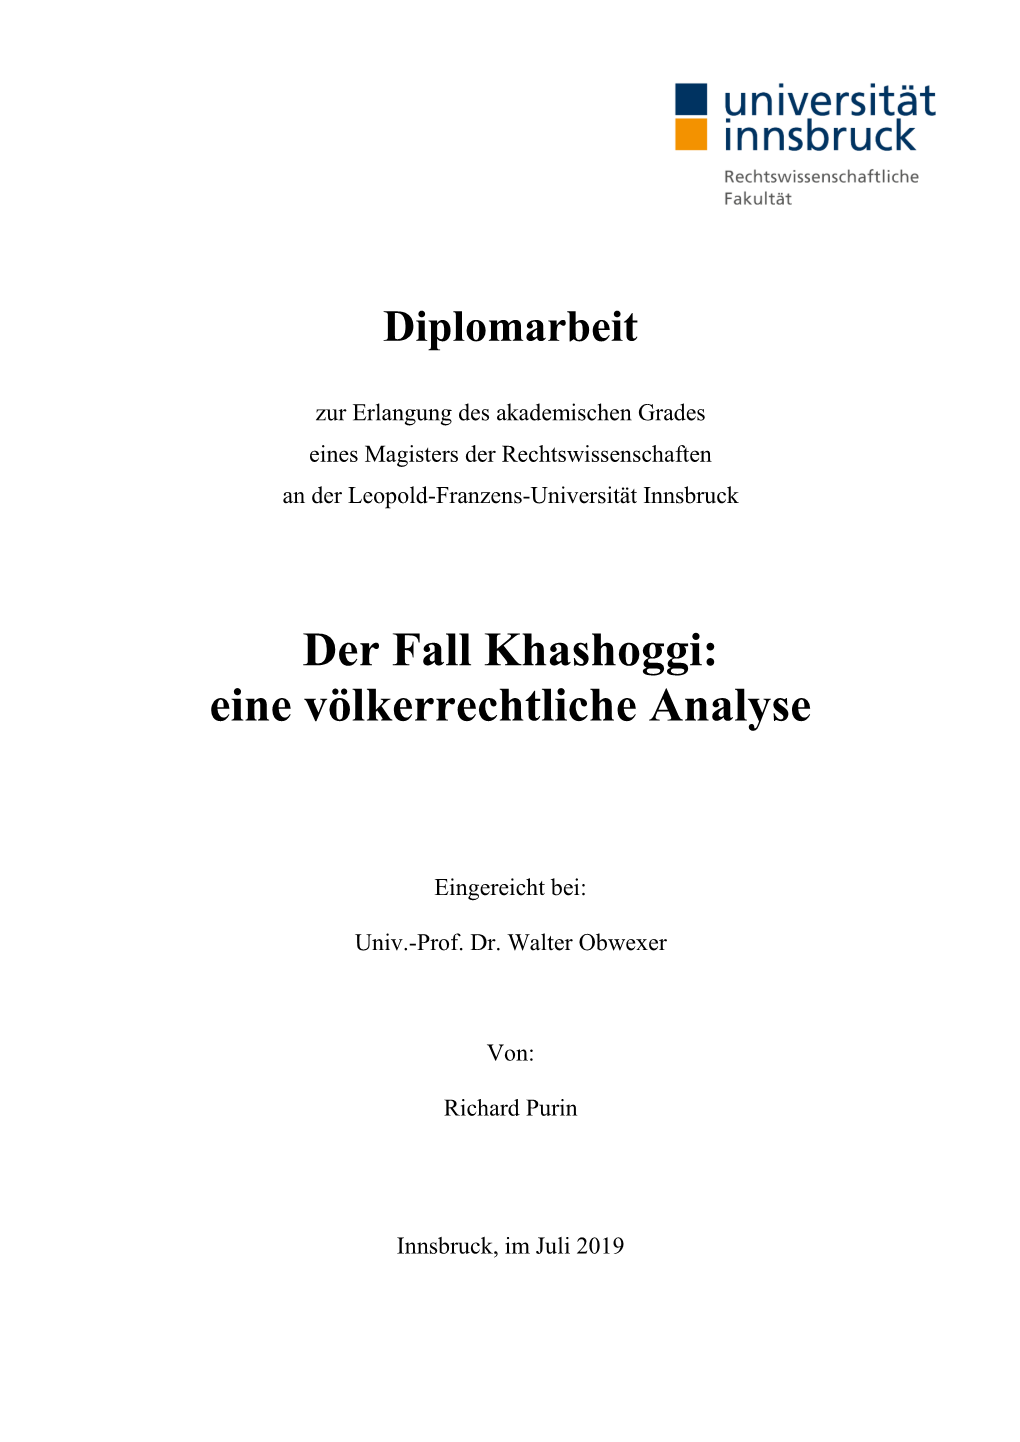 Der Fall Khashoggi: Eine Völkerrechtliche Analyse